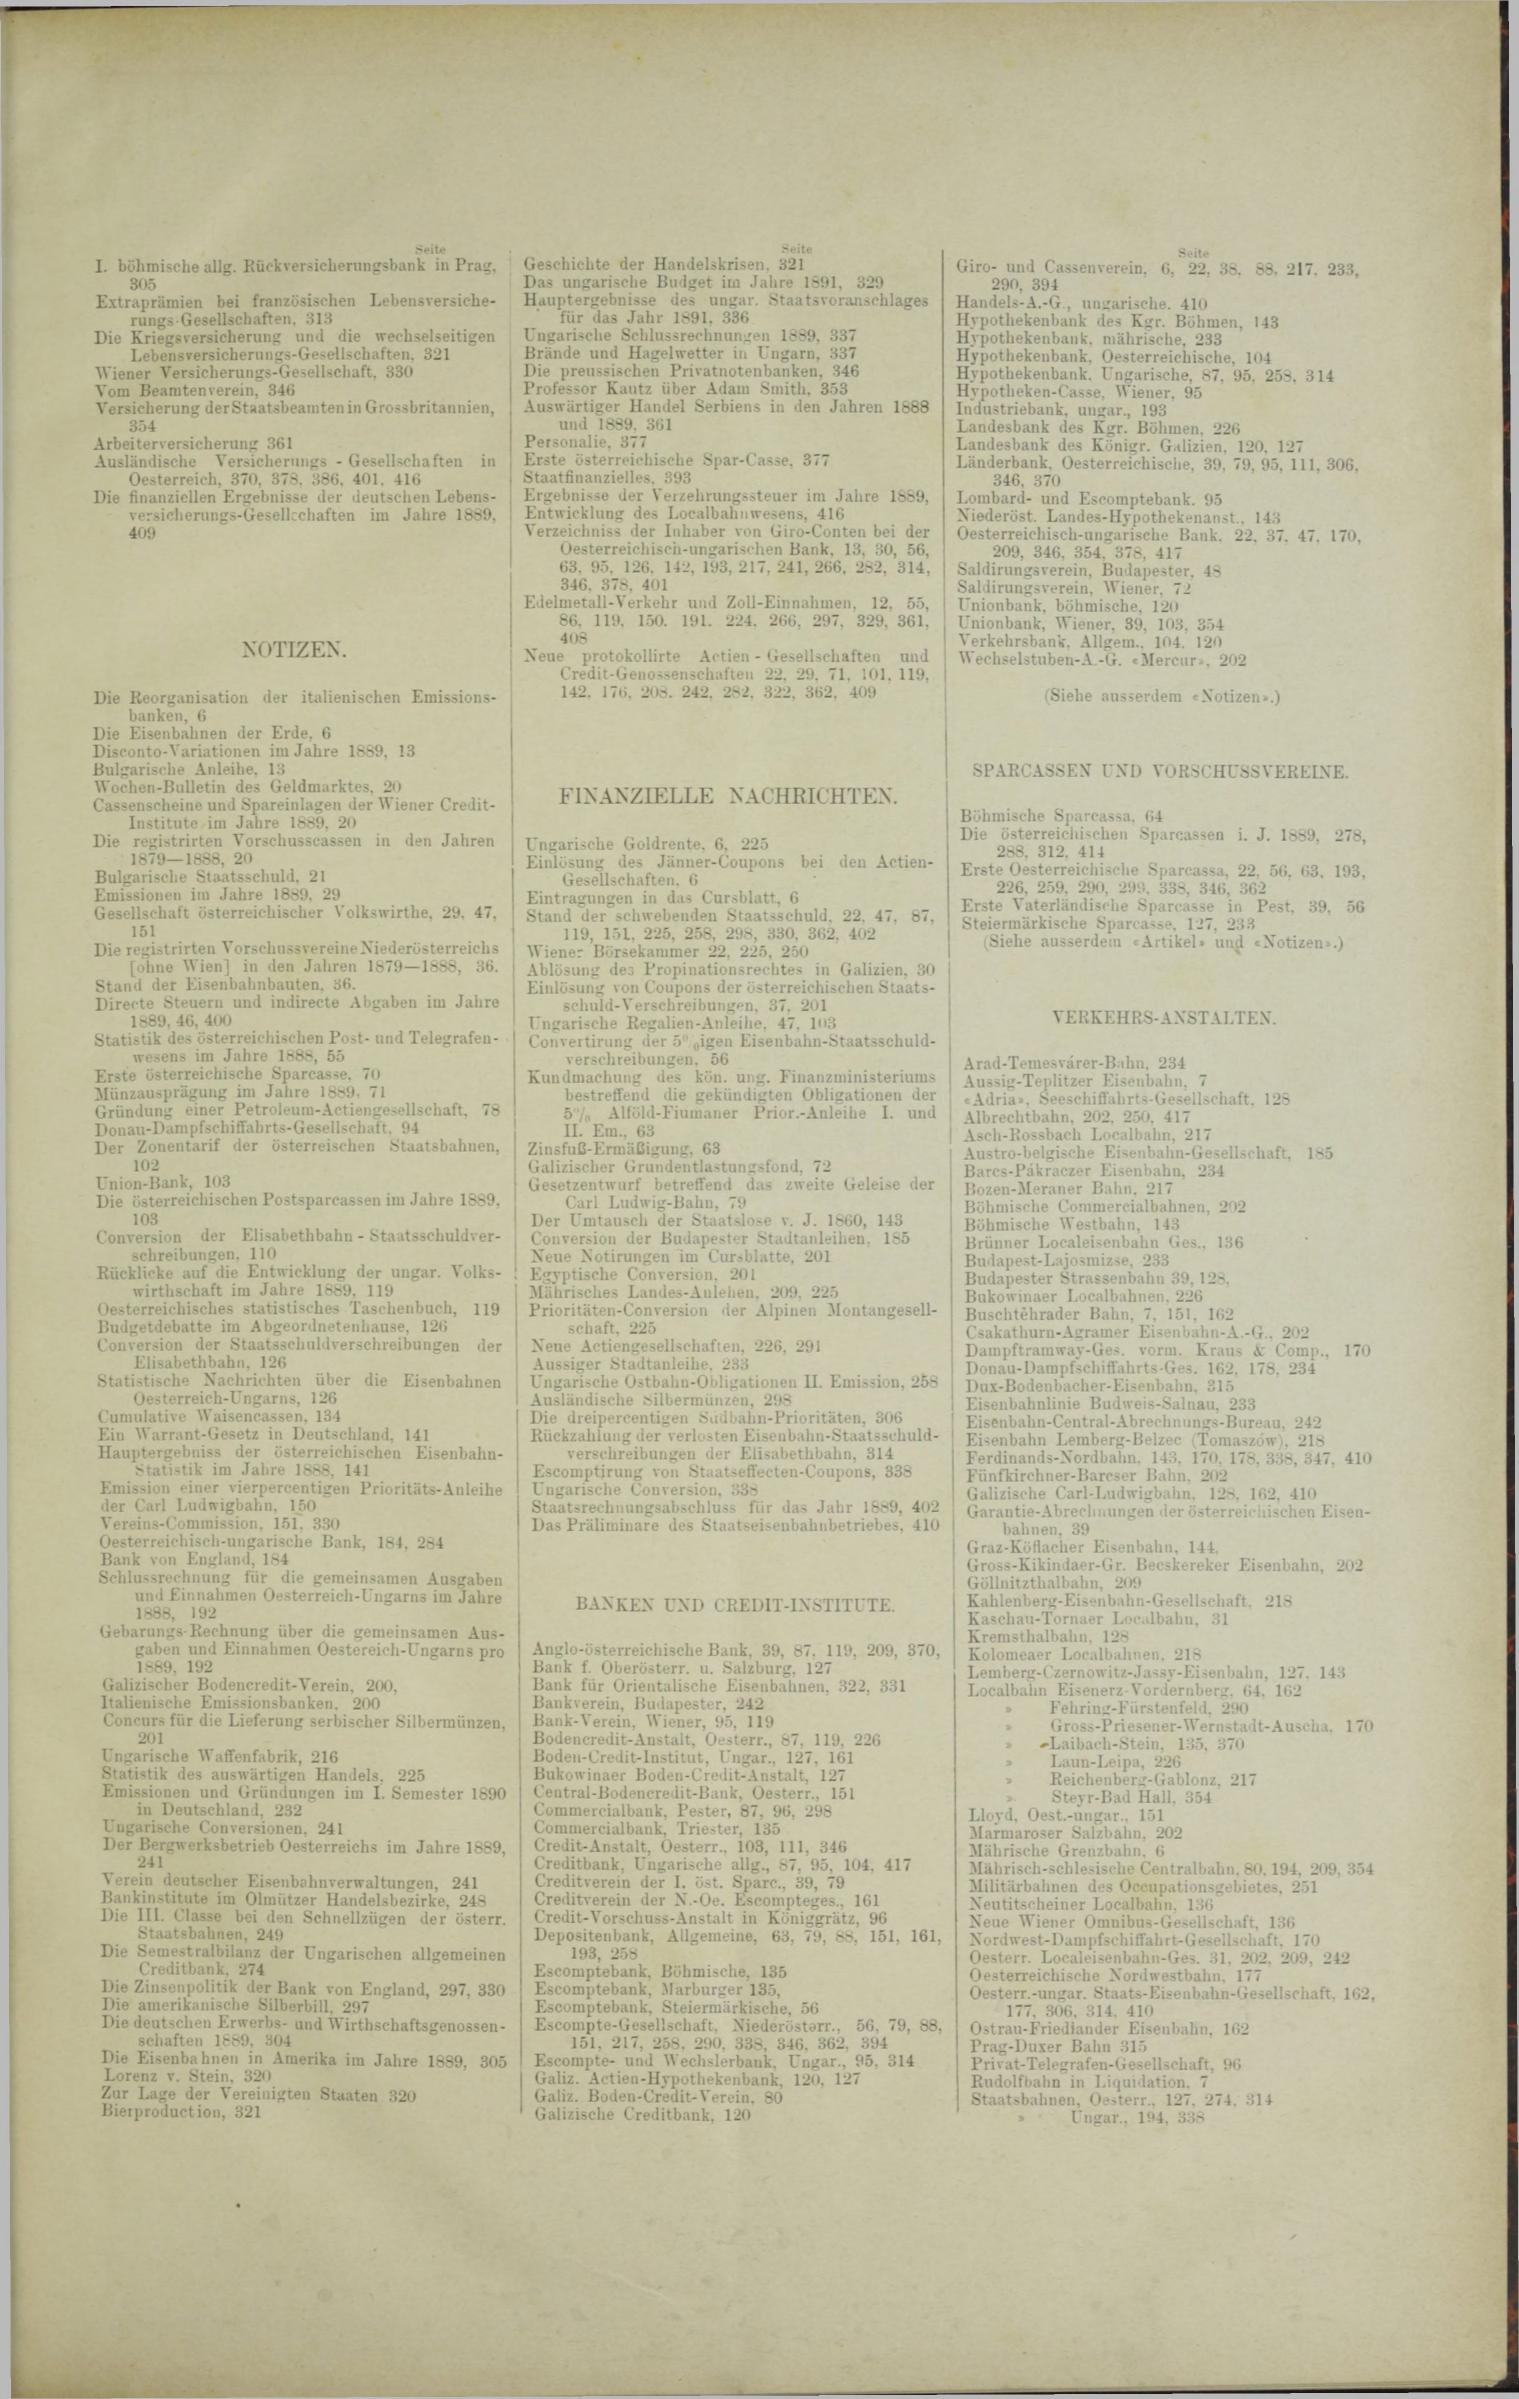 Der Tresor 31.07.1890 - Seite 11